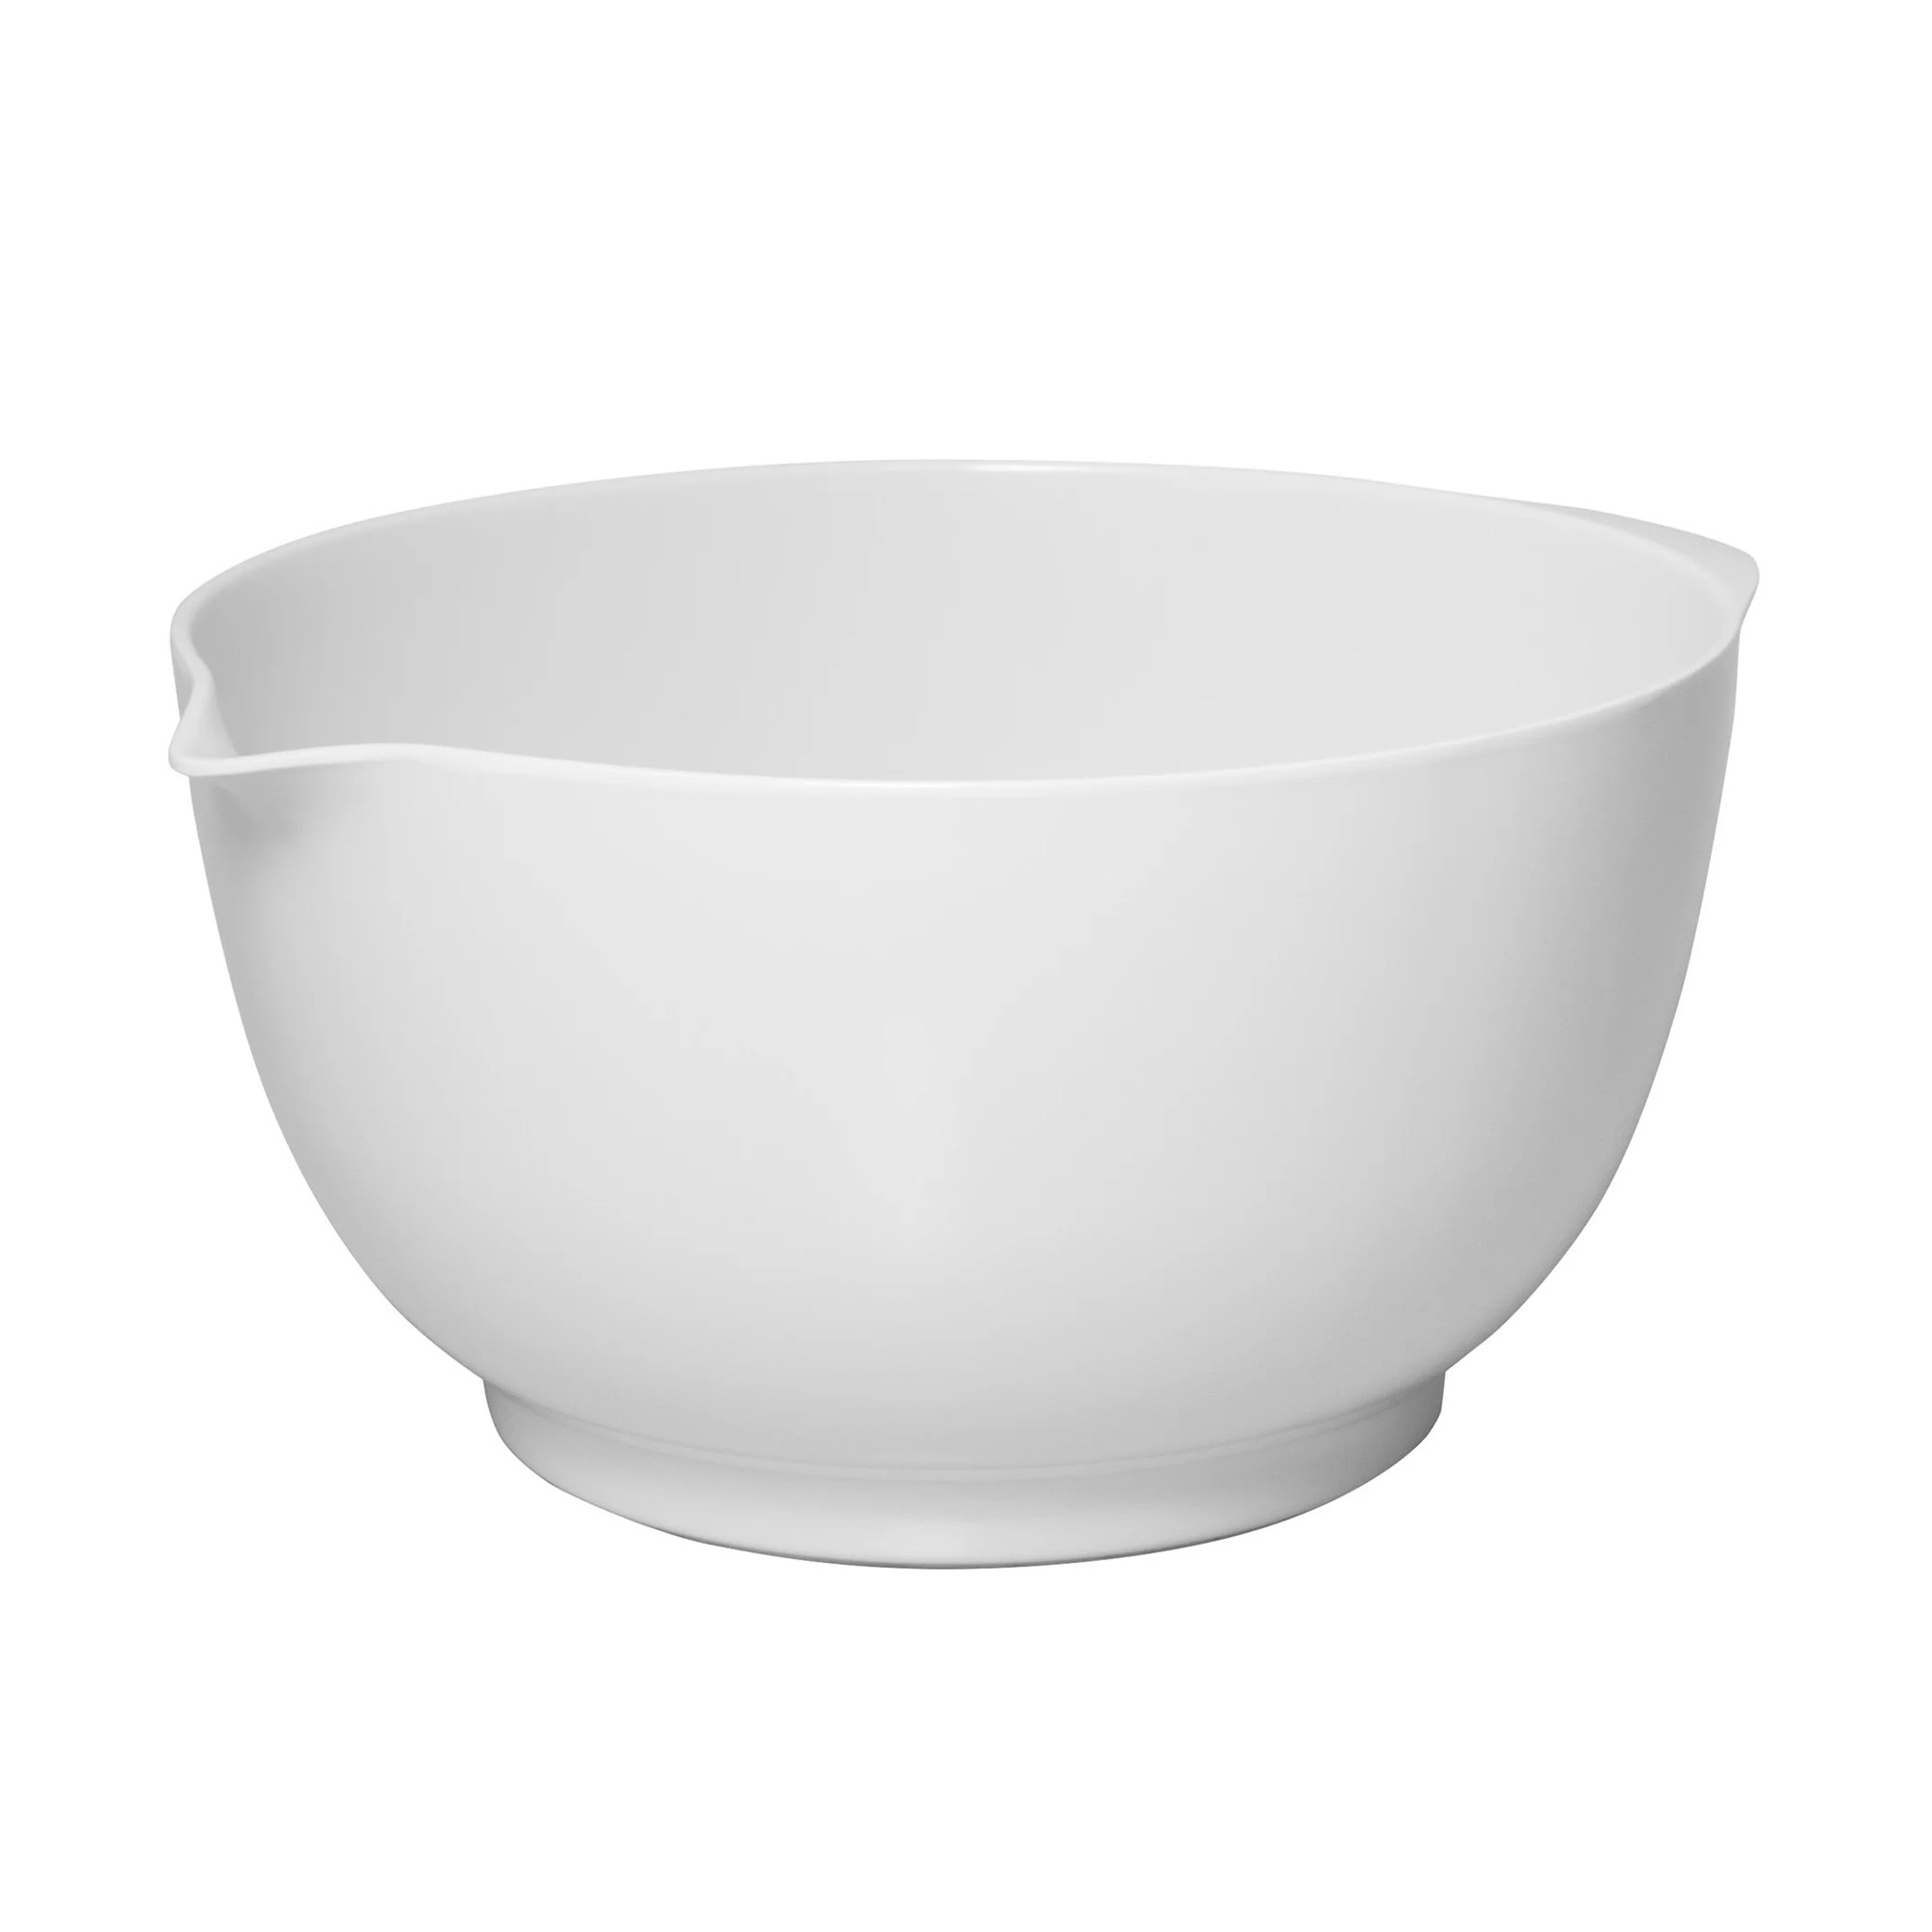 Avanti Melamine Mixing Bowl 24cm - 3.5L White Image 1